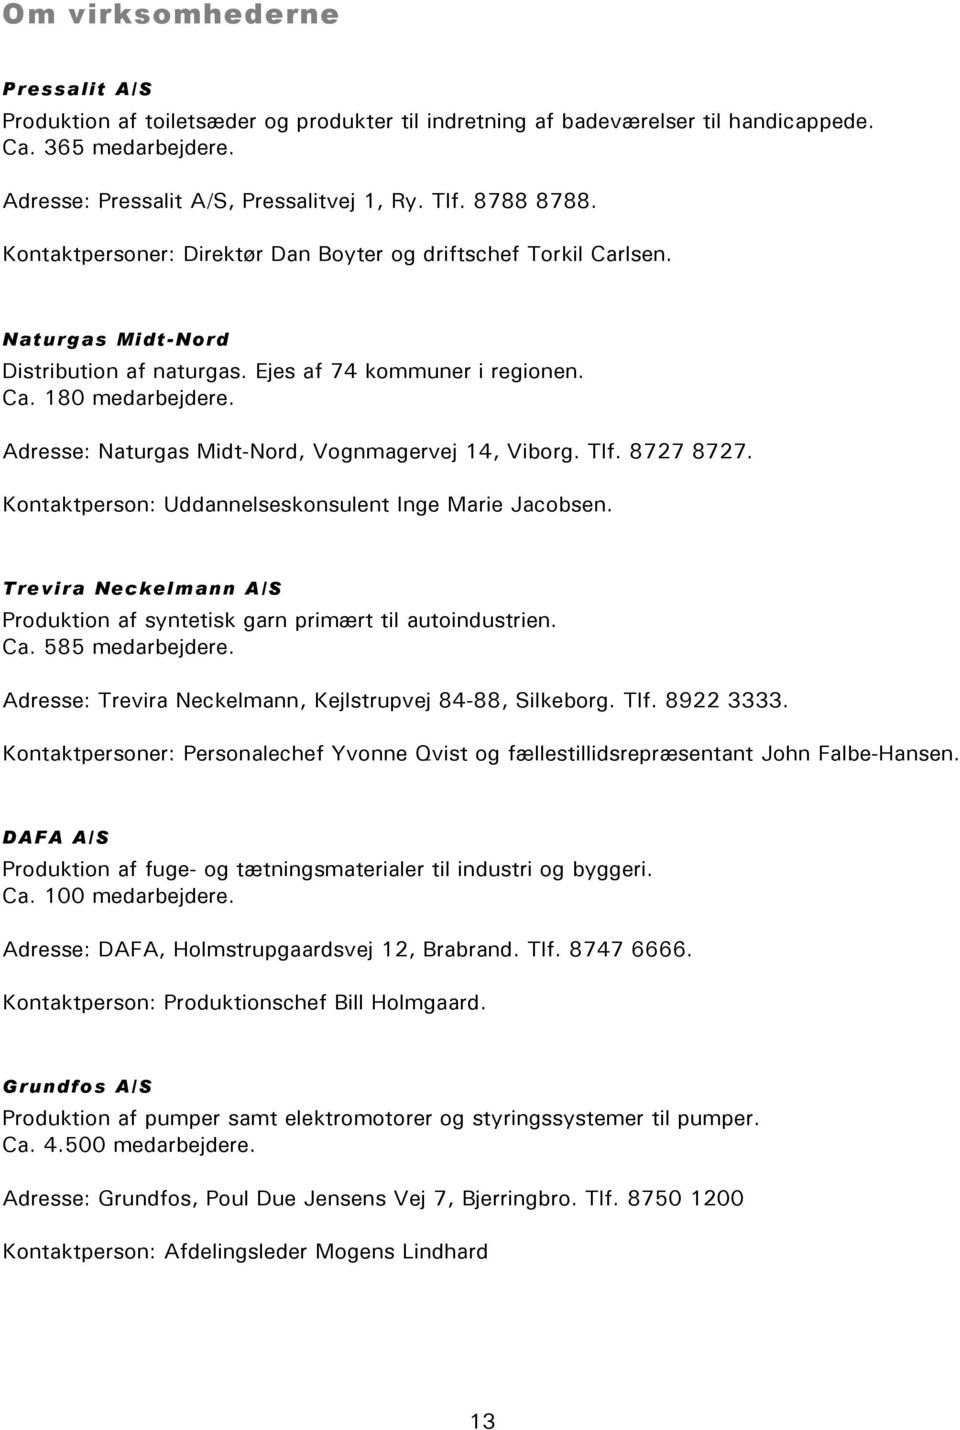 Adresse: Naturgas Midt-Nord, Vognmagervej 14, Viborg. Tlf. 8727 8727. Kontaktperson: Uddannelseskonsulent Inge Marie Jacobsen.